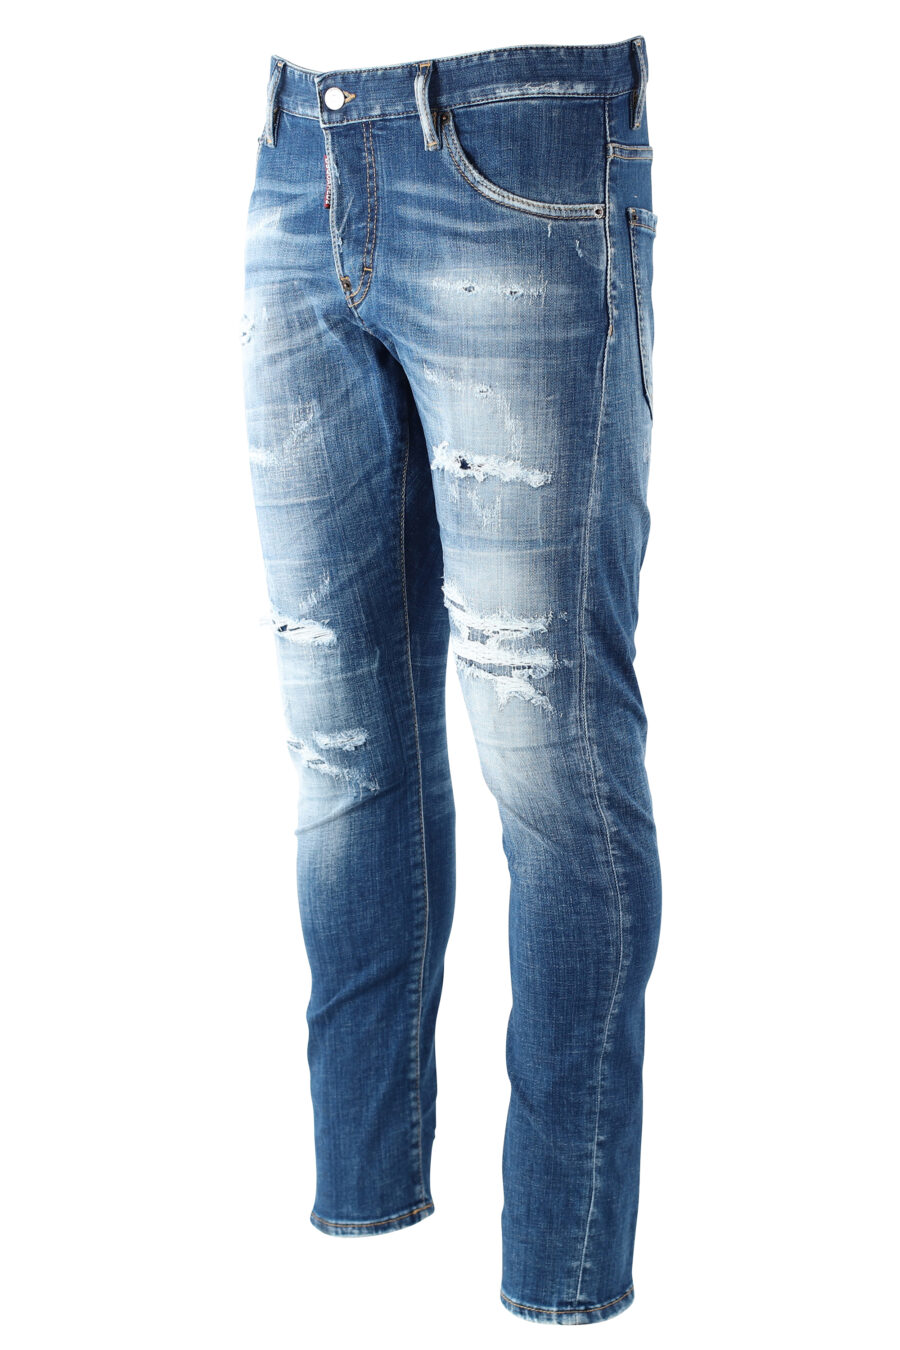 Sexy twist denim jeans "sexy twiste jean" blue worn with rips - IMG 9694